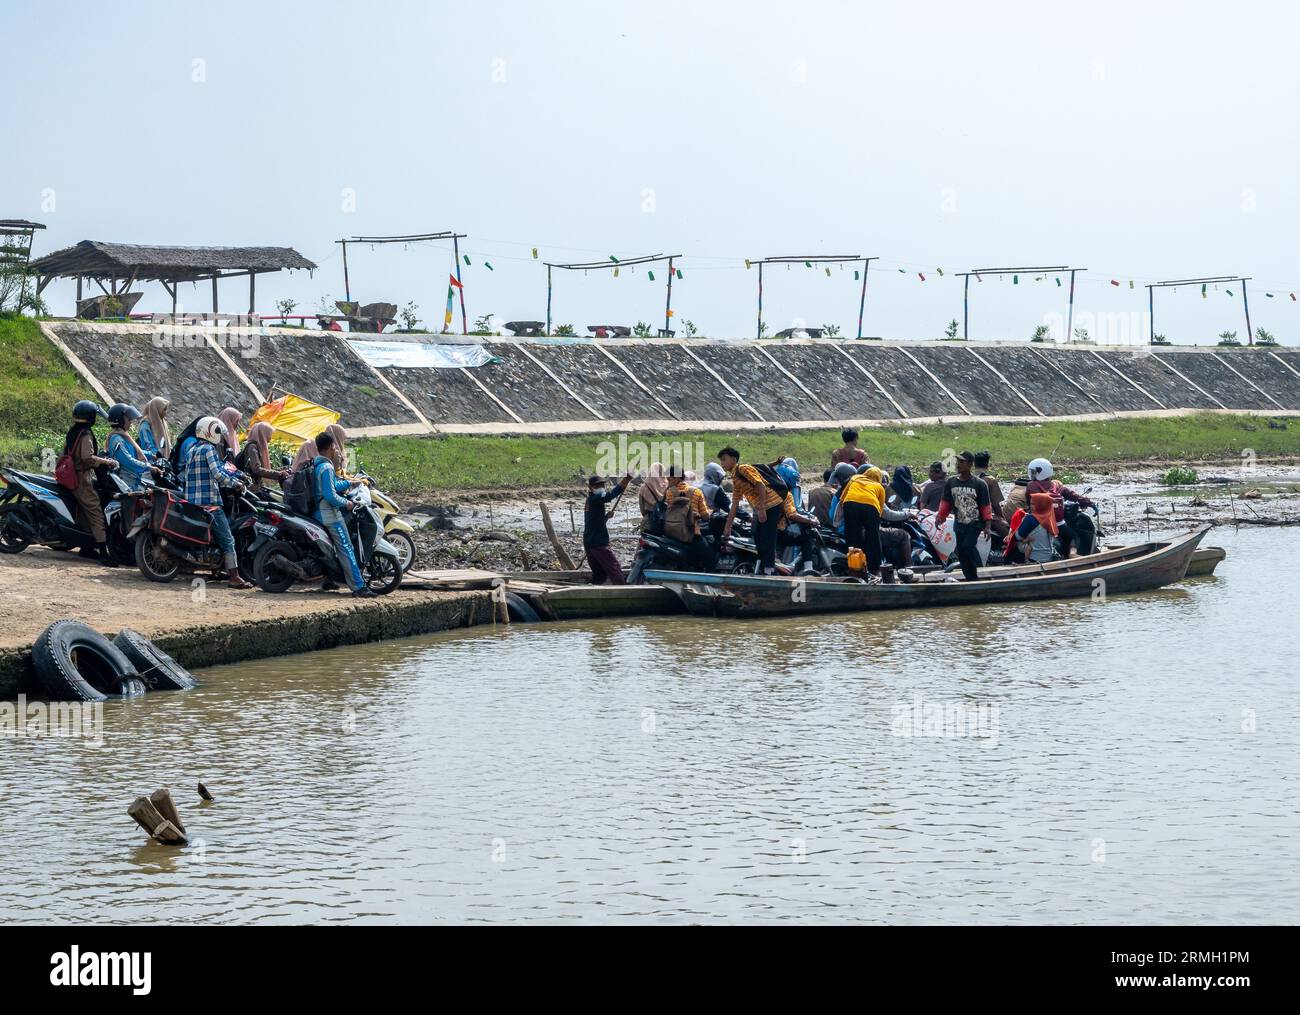 Menschen und Motorräder sind auf kleinen Fähren eingeklemmt. Sumatra, Indonesien. Stockfoto